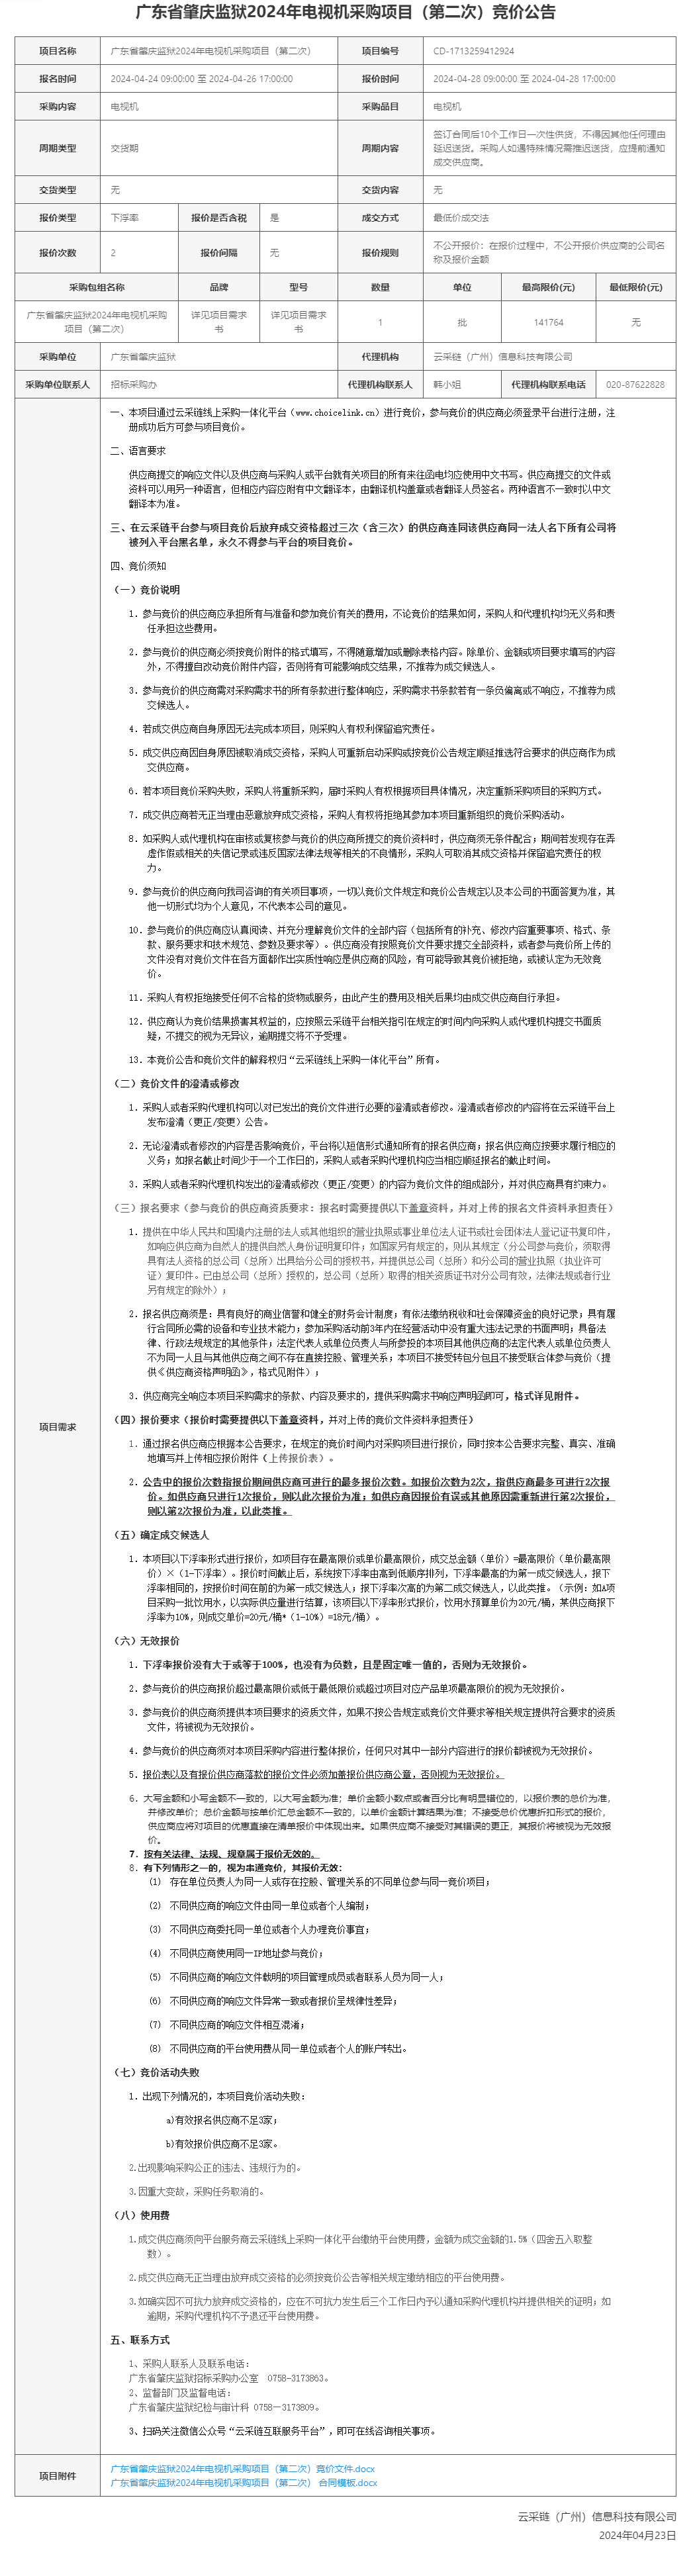 广东省肇庆监狱2024年电视机采购项目（第二次）竞价公告.png